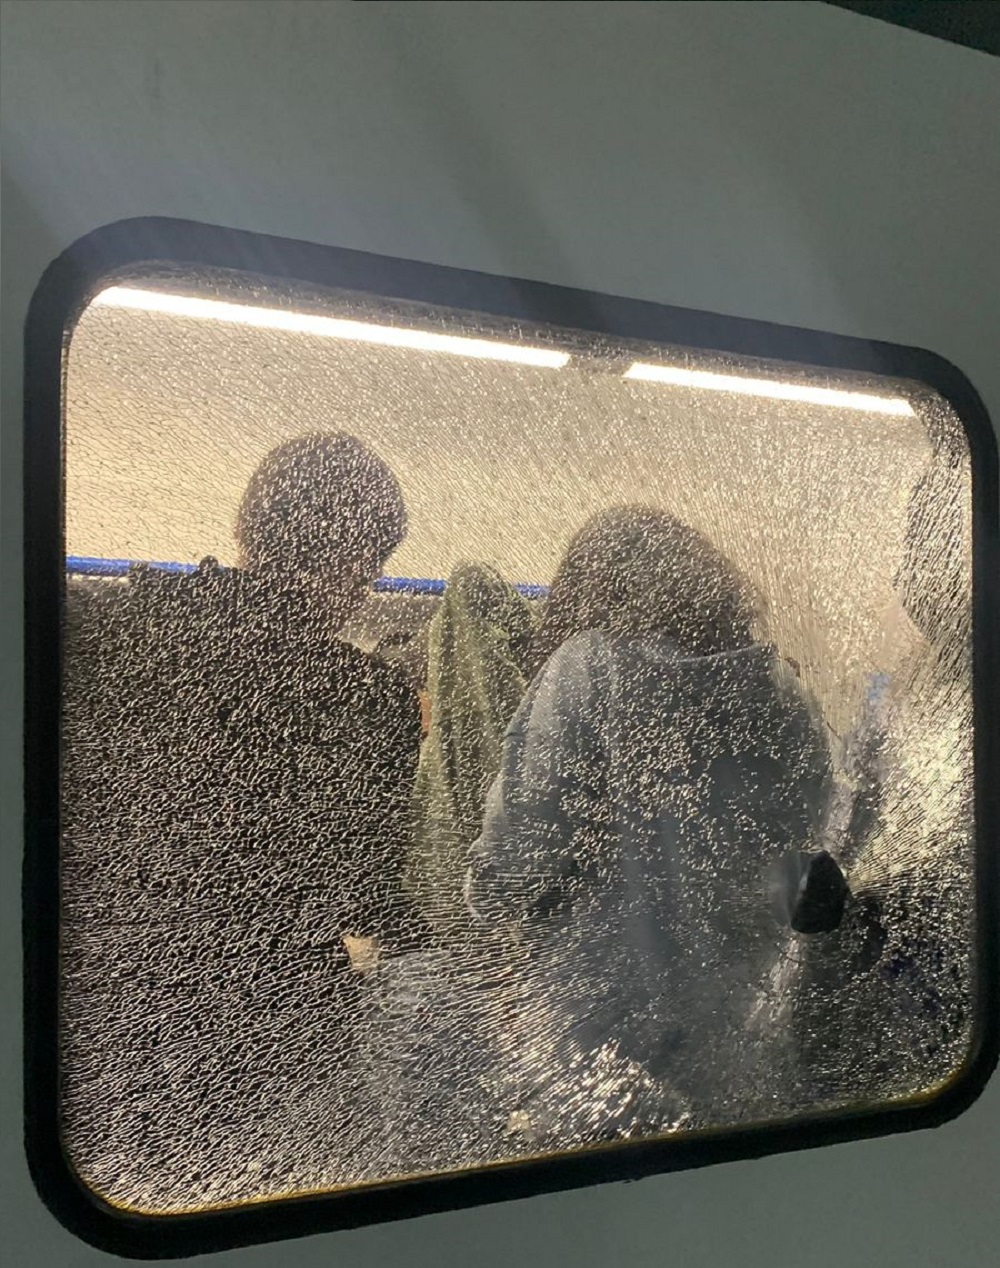 Չարագործները քարեր են նետել Հարավկովկասյան երկաթուղու էլեկտրագնացքի վրա